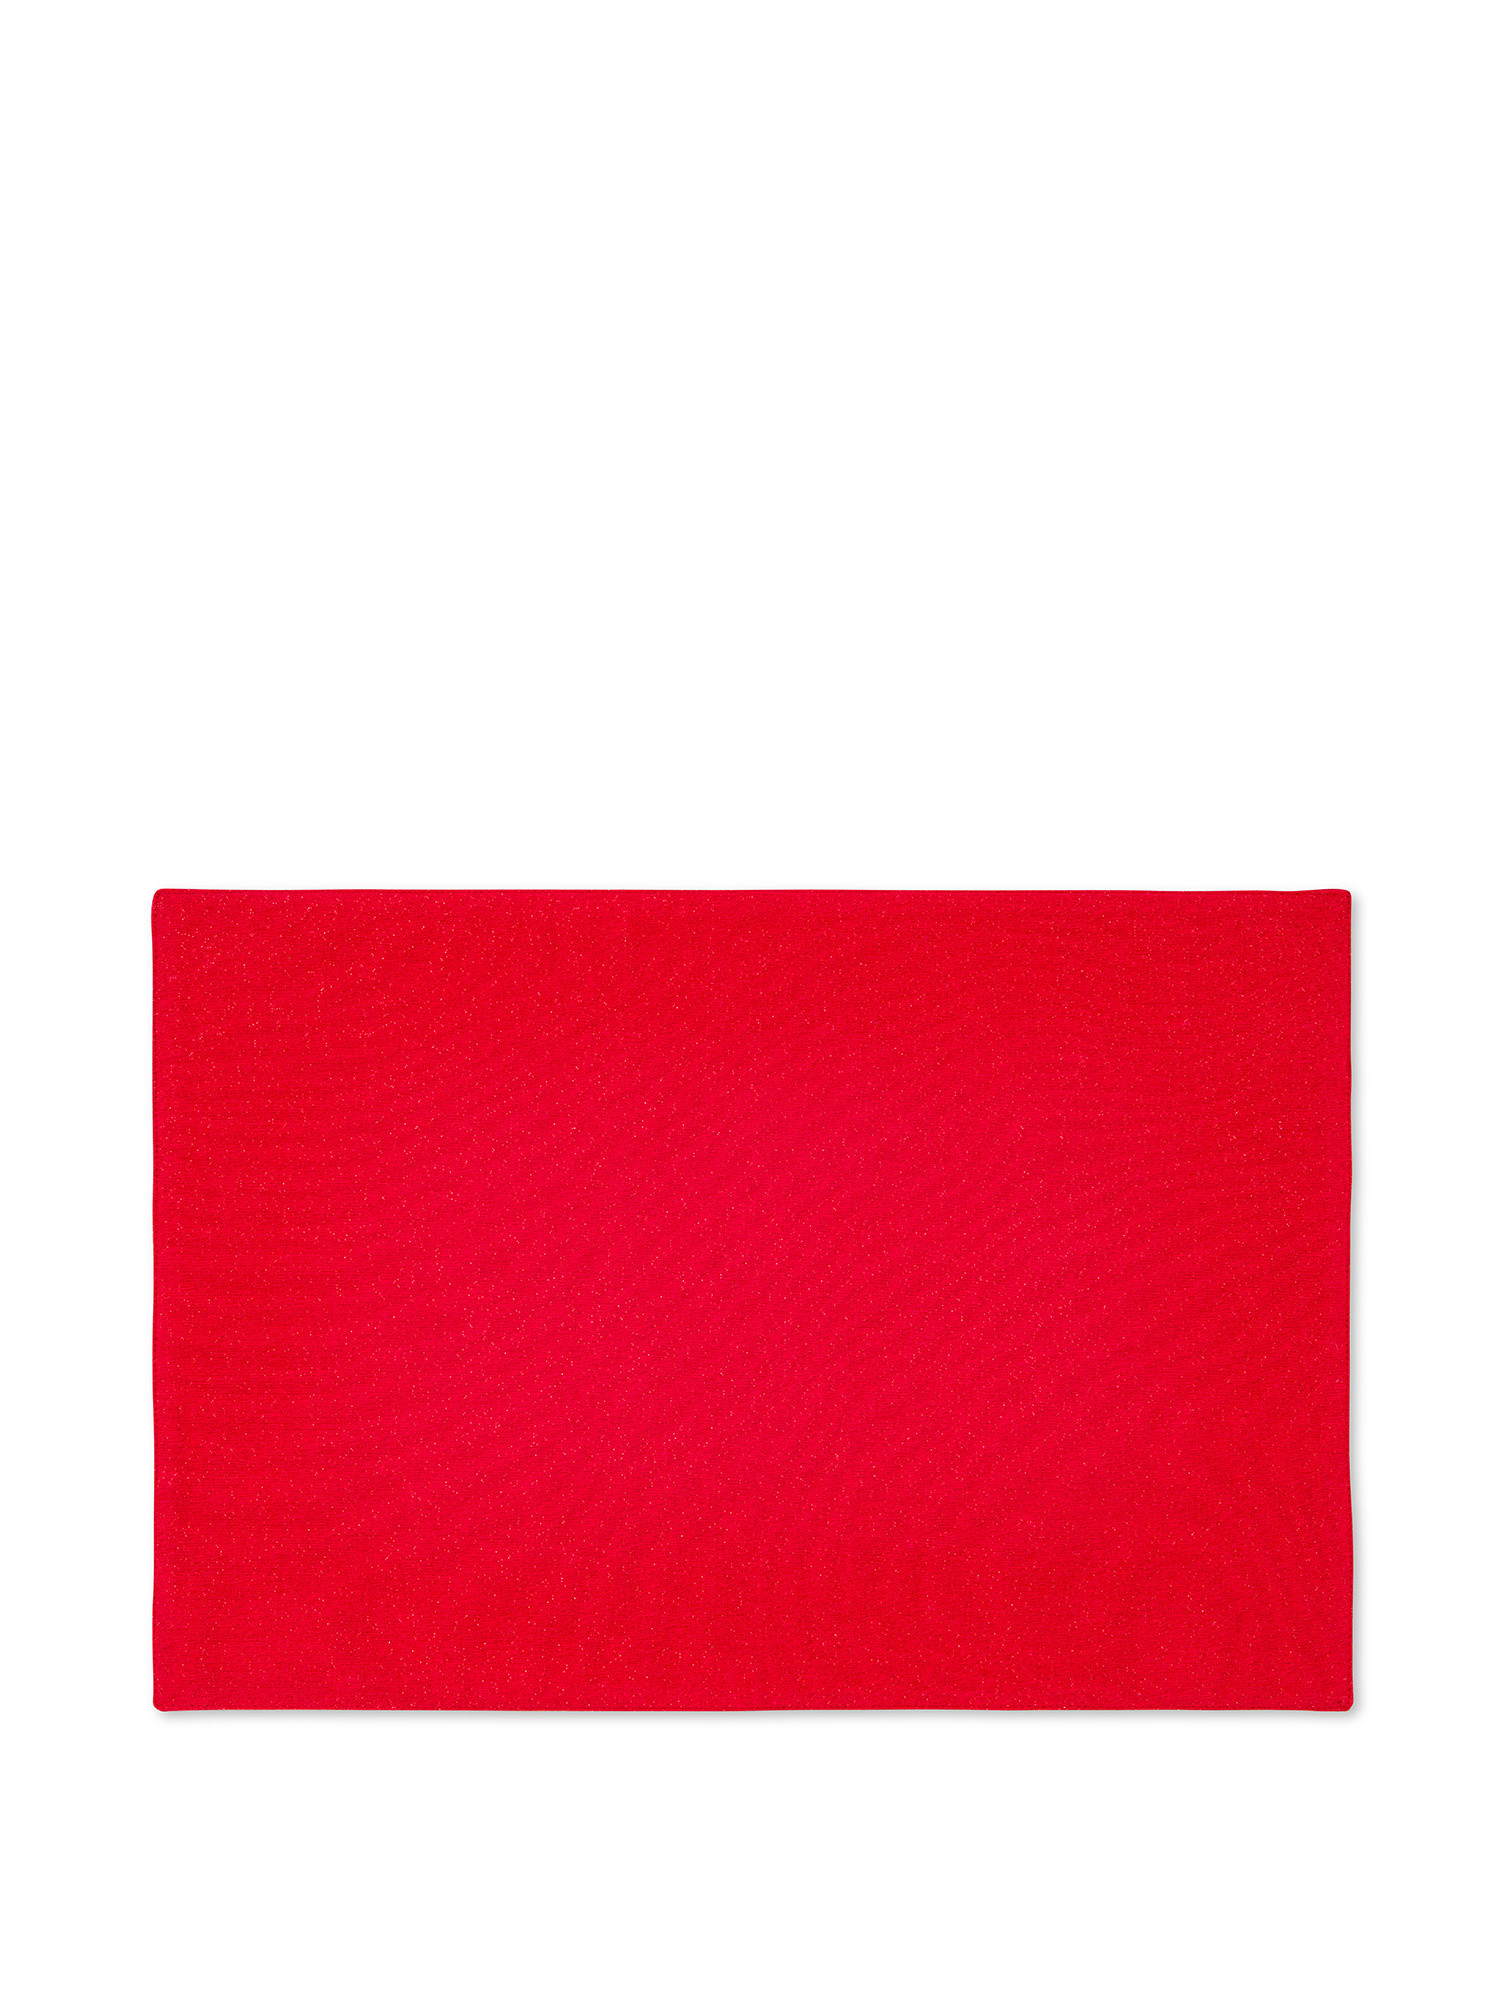 Tovaglietta cotone con fili lurex, Rosso, large image number 0